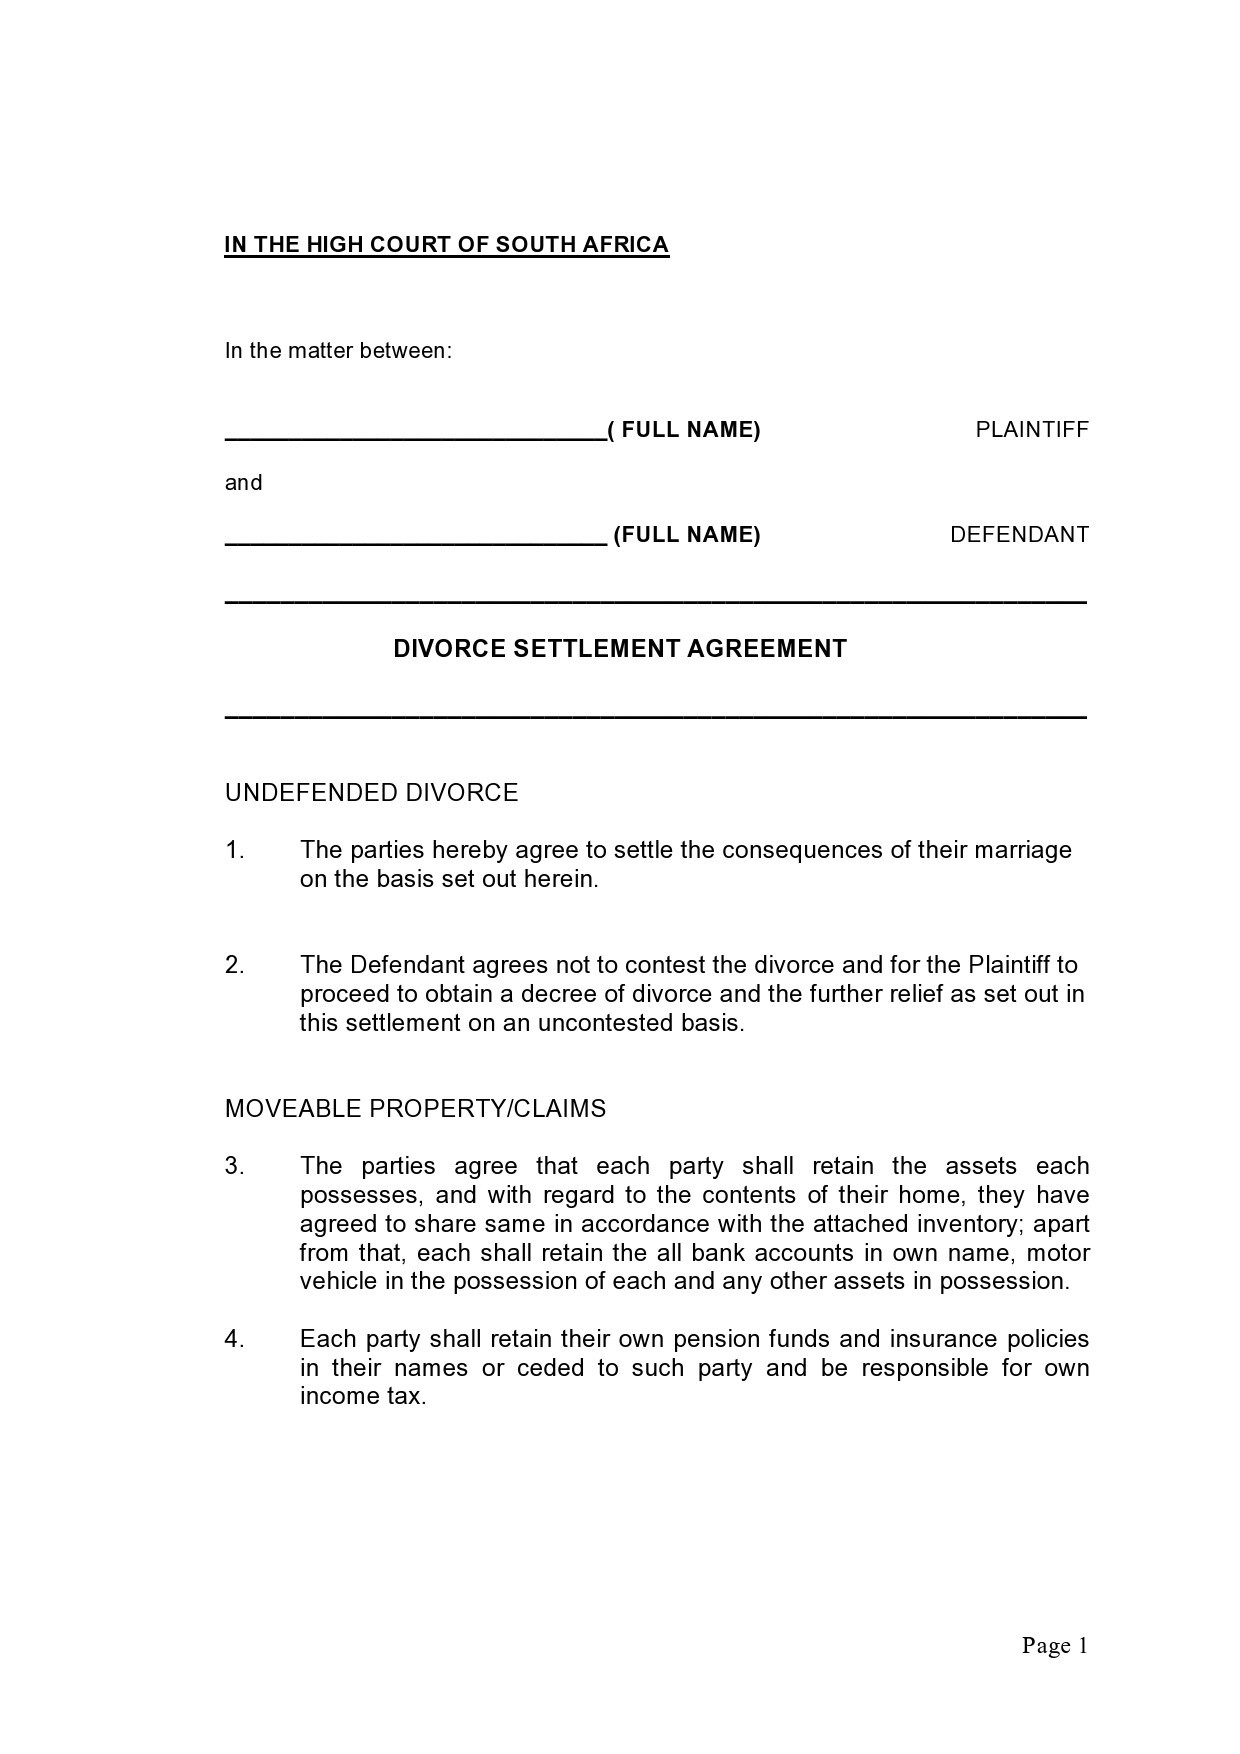 assignment of settlement agreement